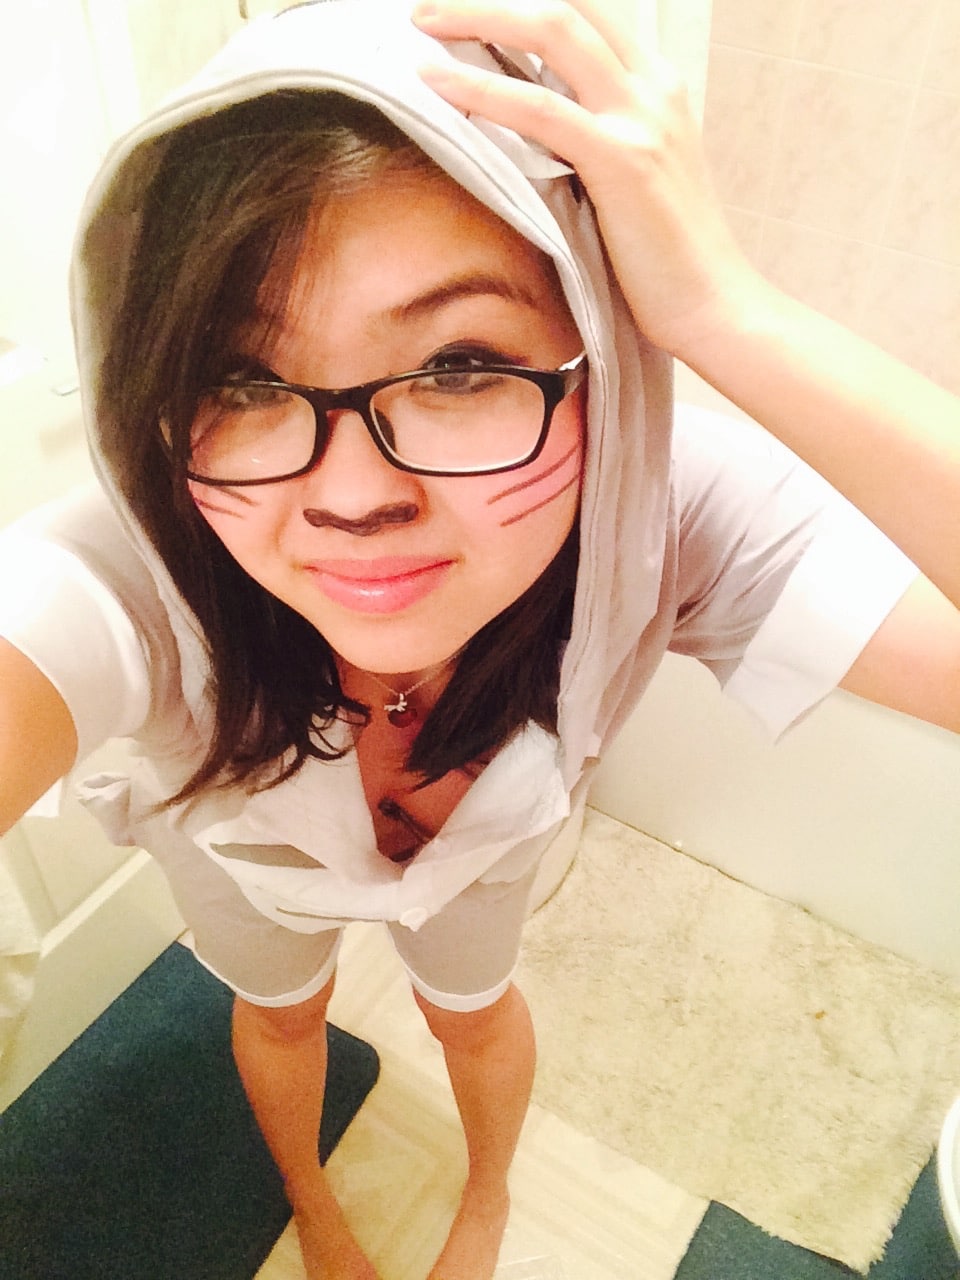 Totoro cosplay night selfie